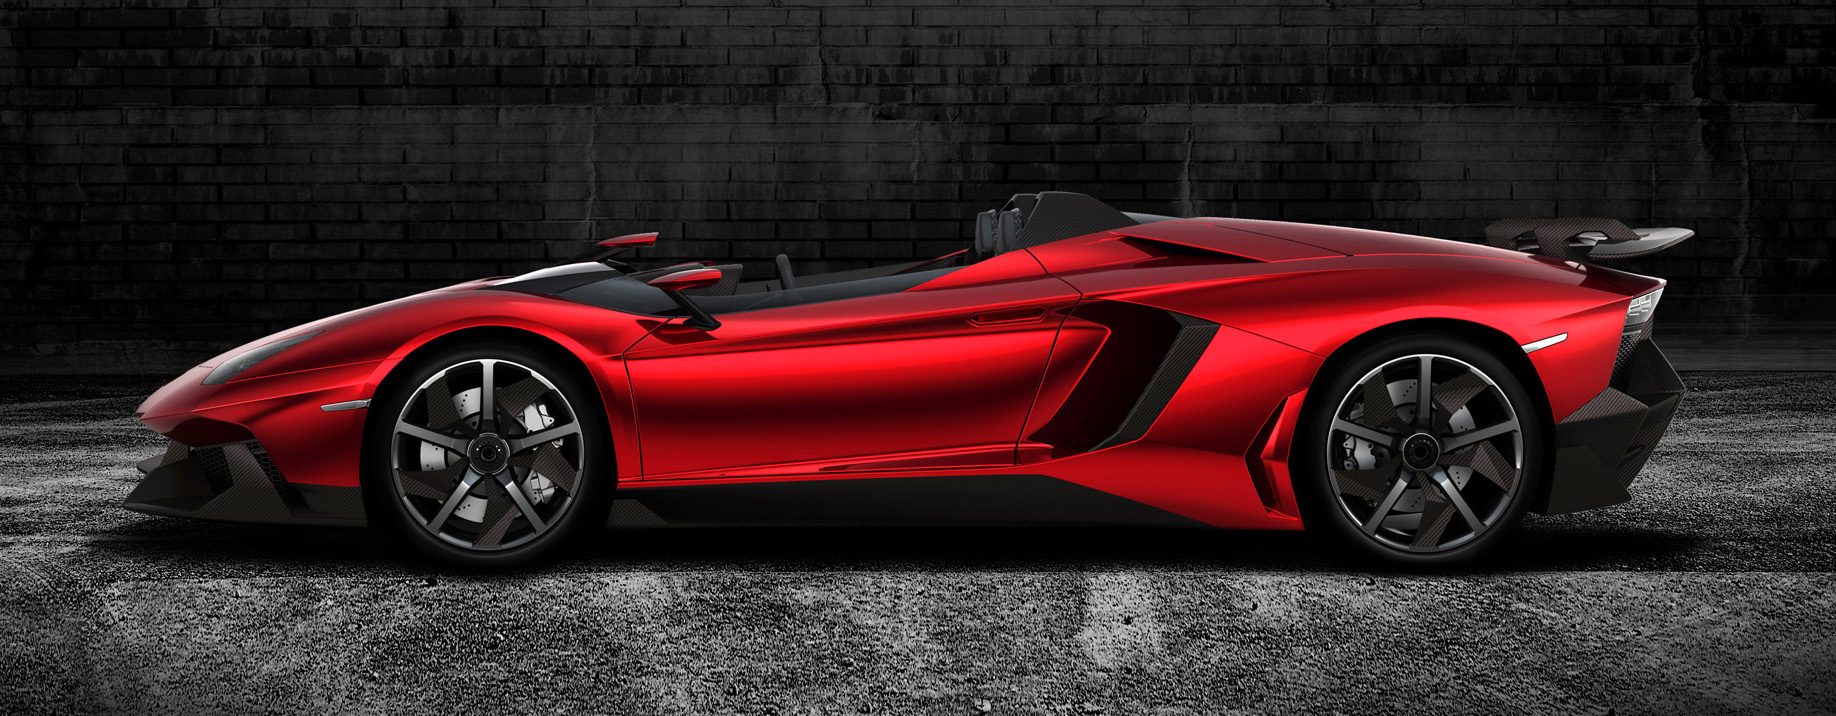 
Image Design Extrieur - Lamborghini Aventador J (2012)
 